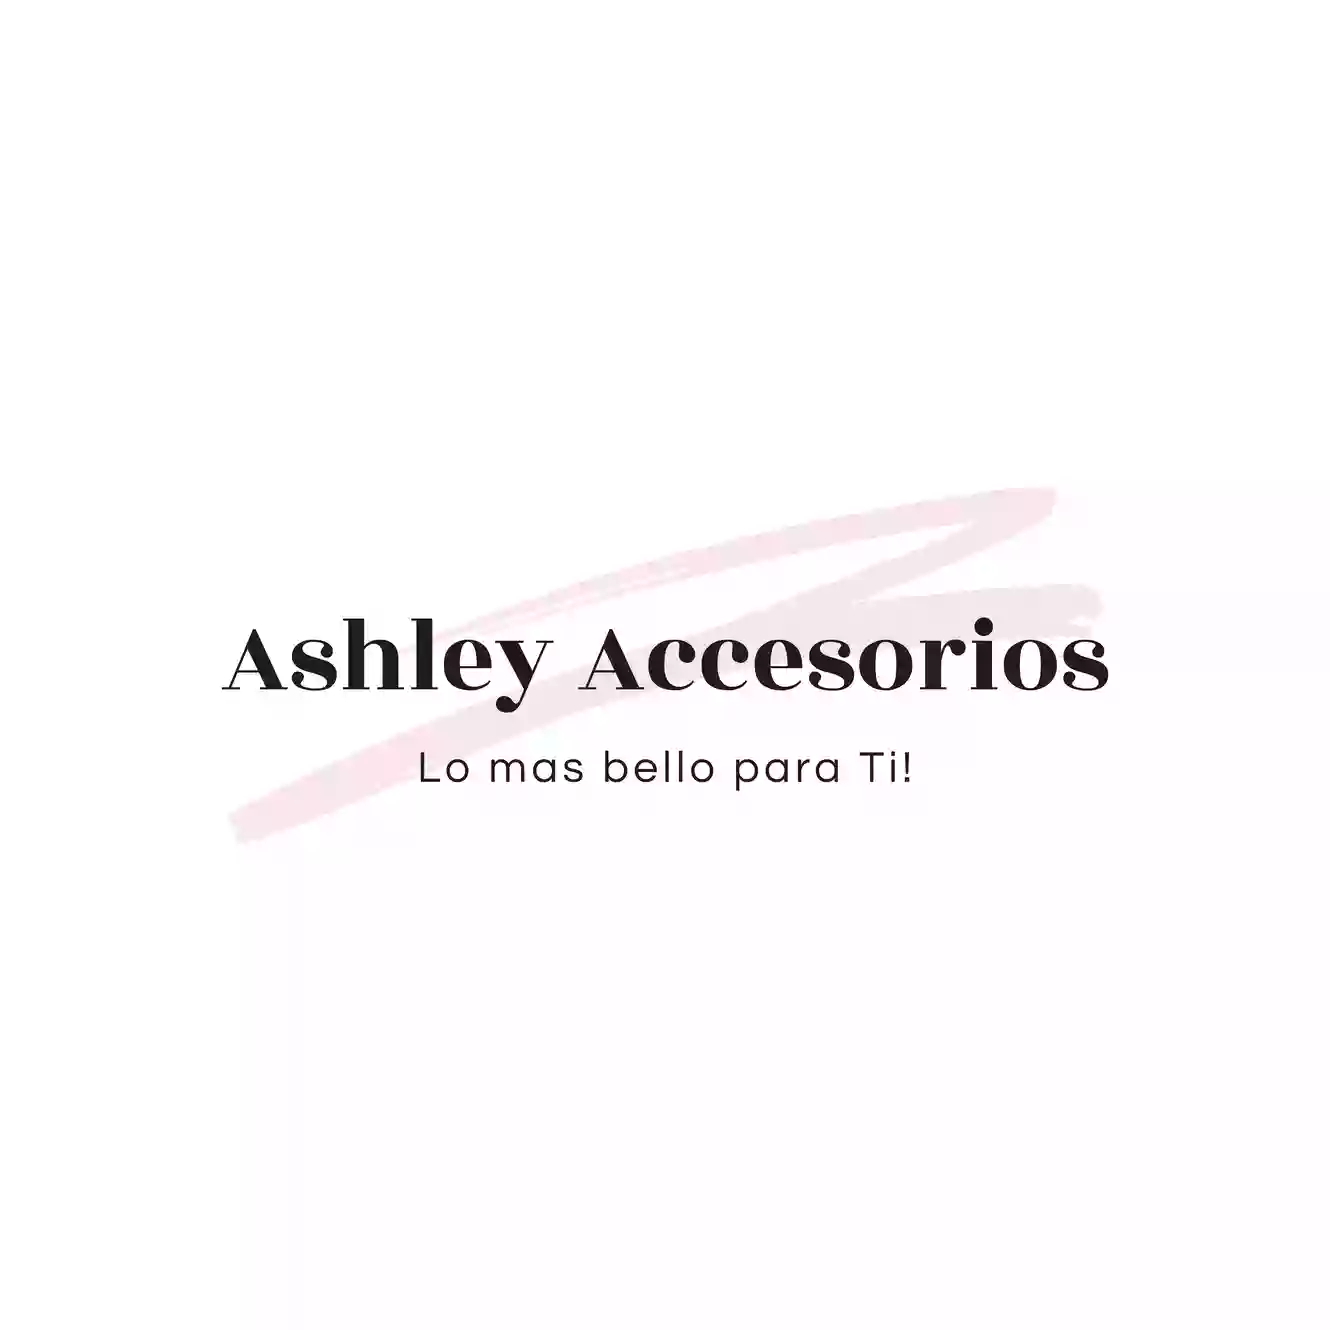 Ashley Accesorios LLC